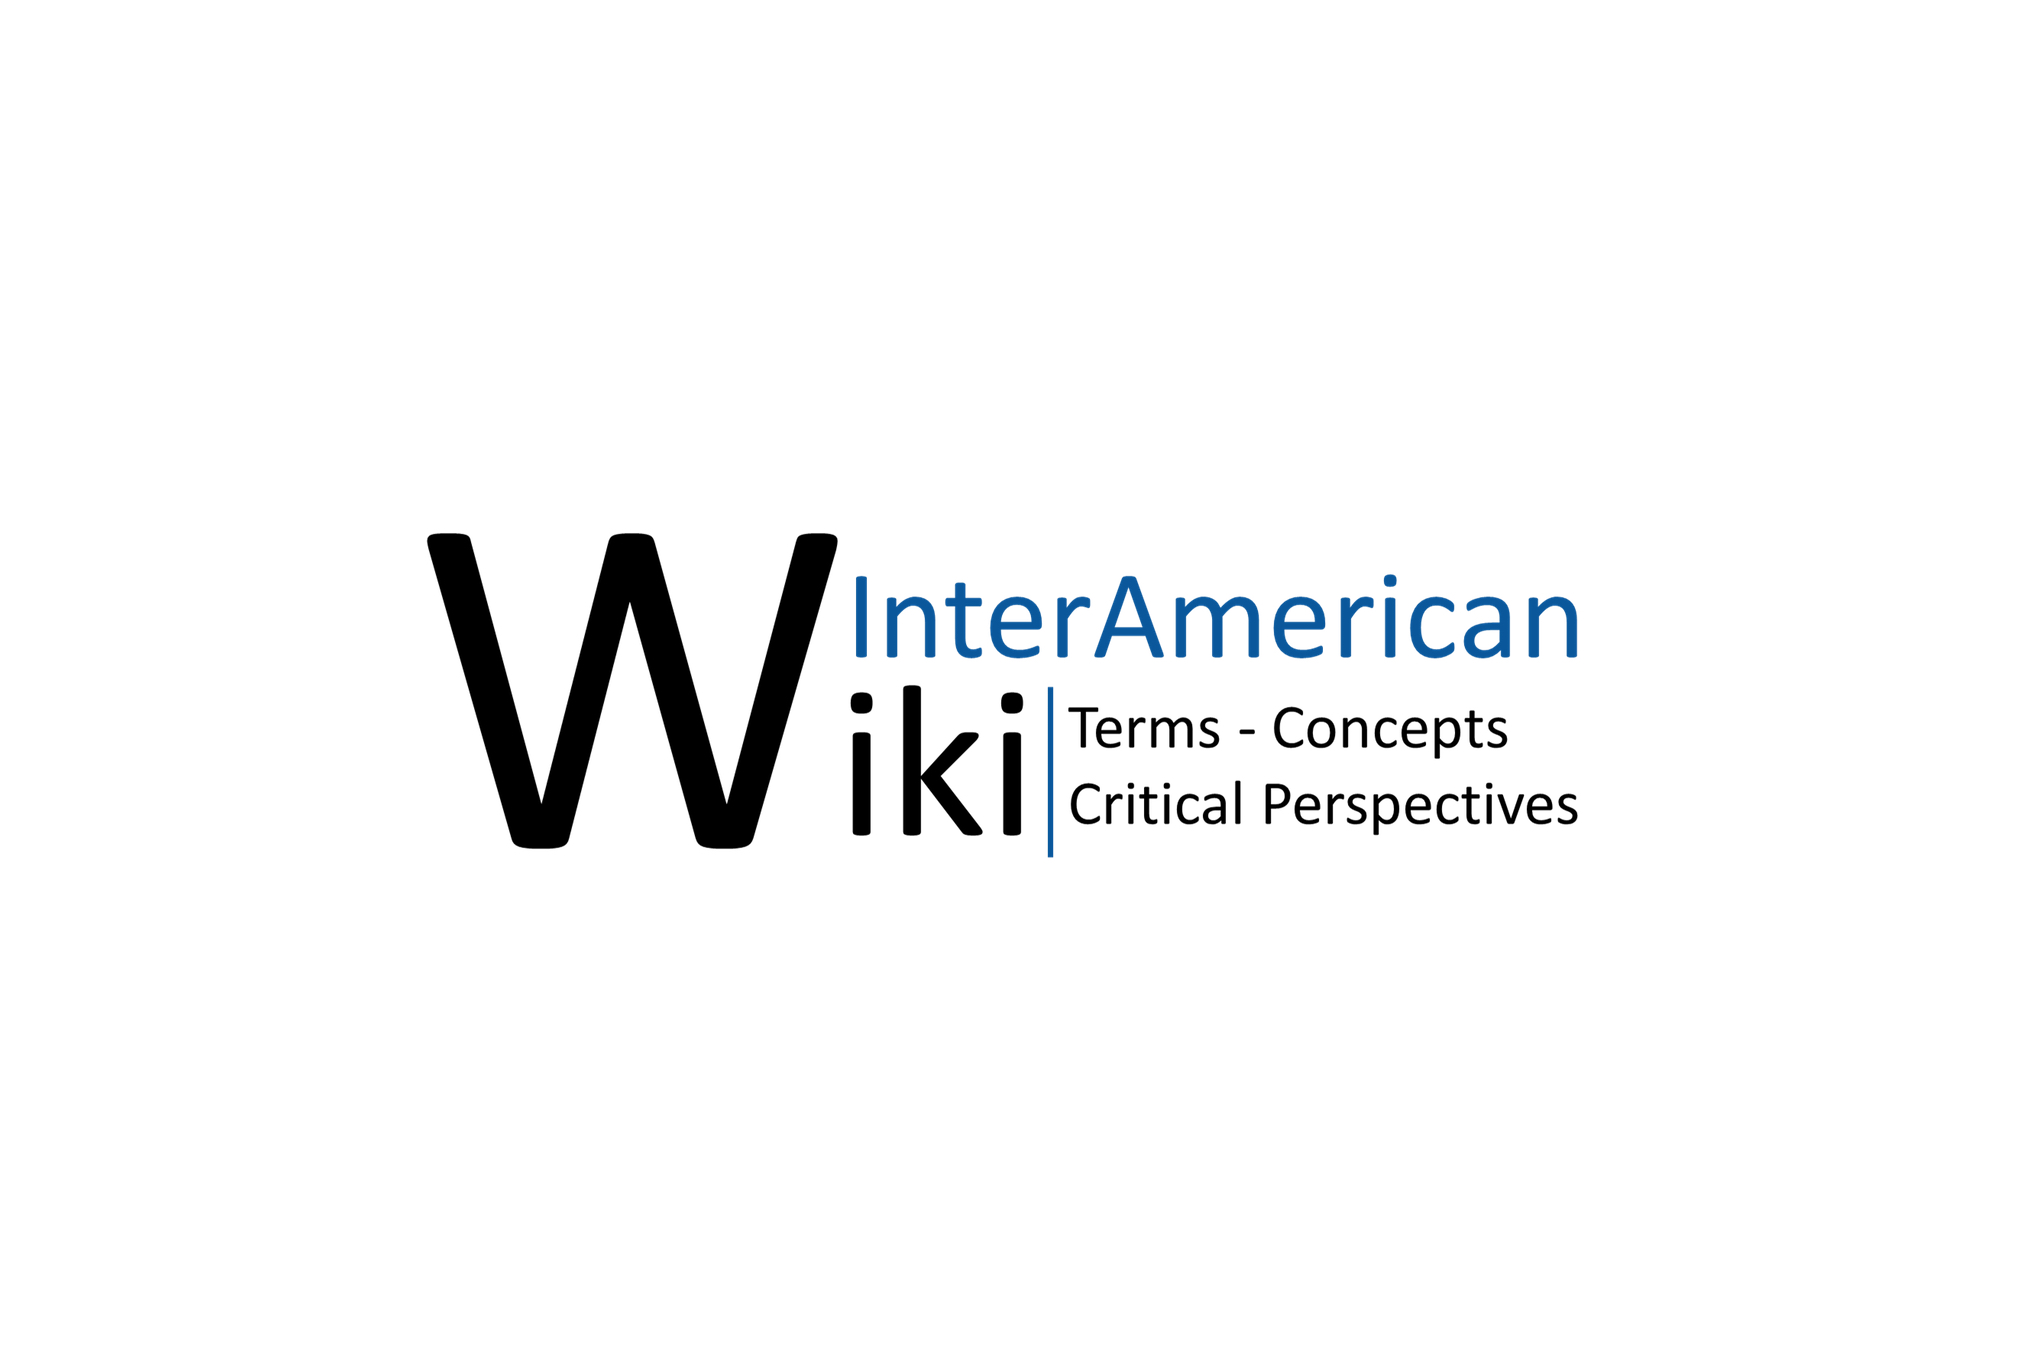 Kachel mit Link zum InterAmerican Wiki. Auf dem Kachelbild ist das Logo des InterAmerican Wiki zu sehen. 